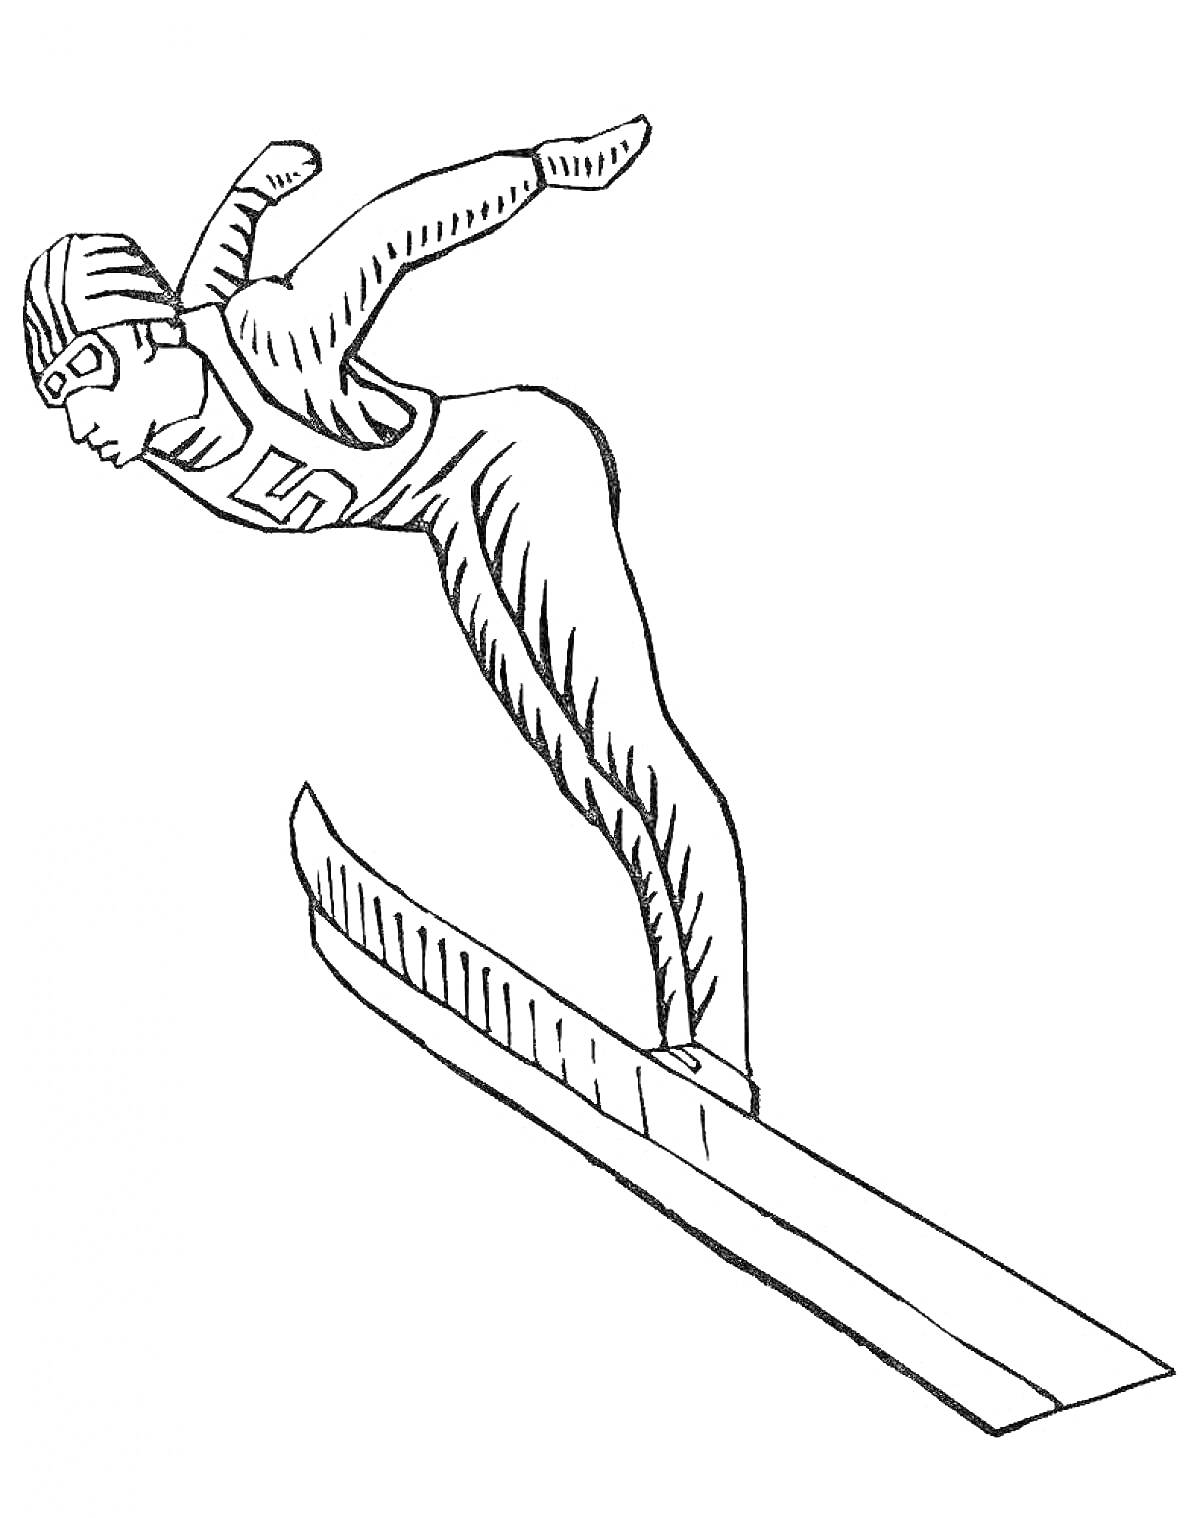 Лыжник в прыжке с трамплина, шлем, очки, комбинезон, лыжи и трамплин